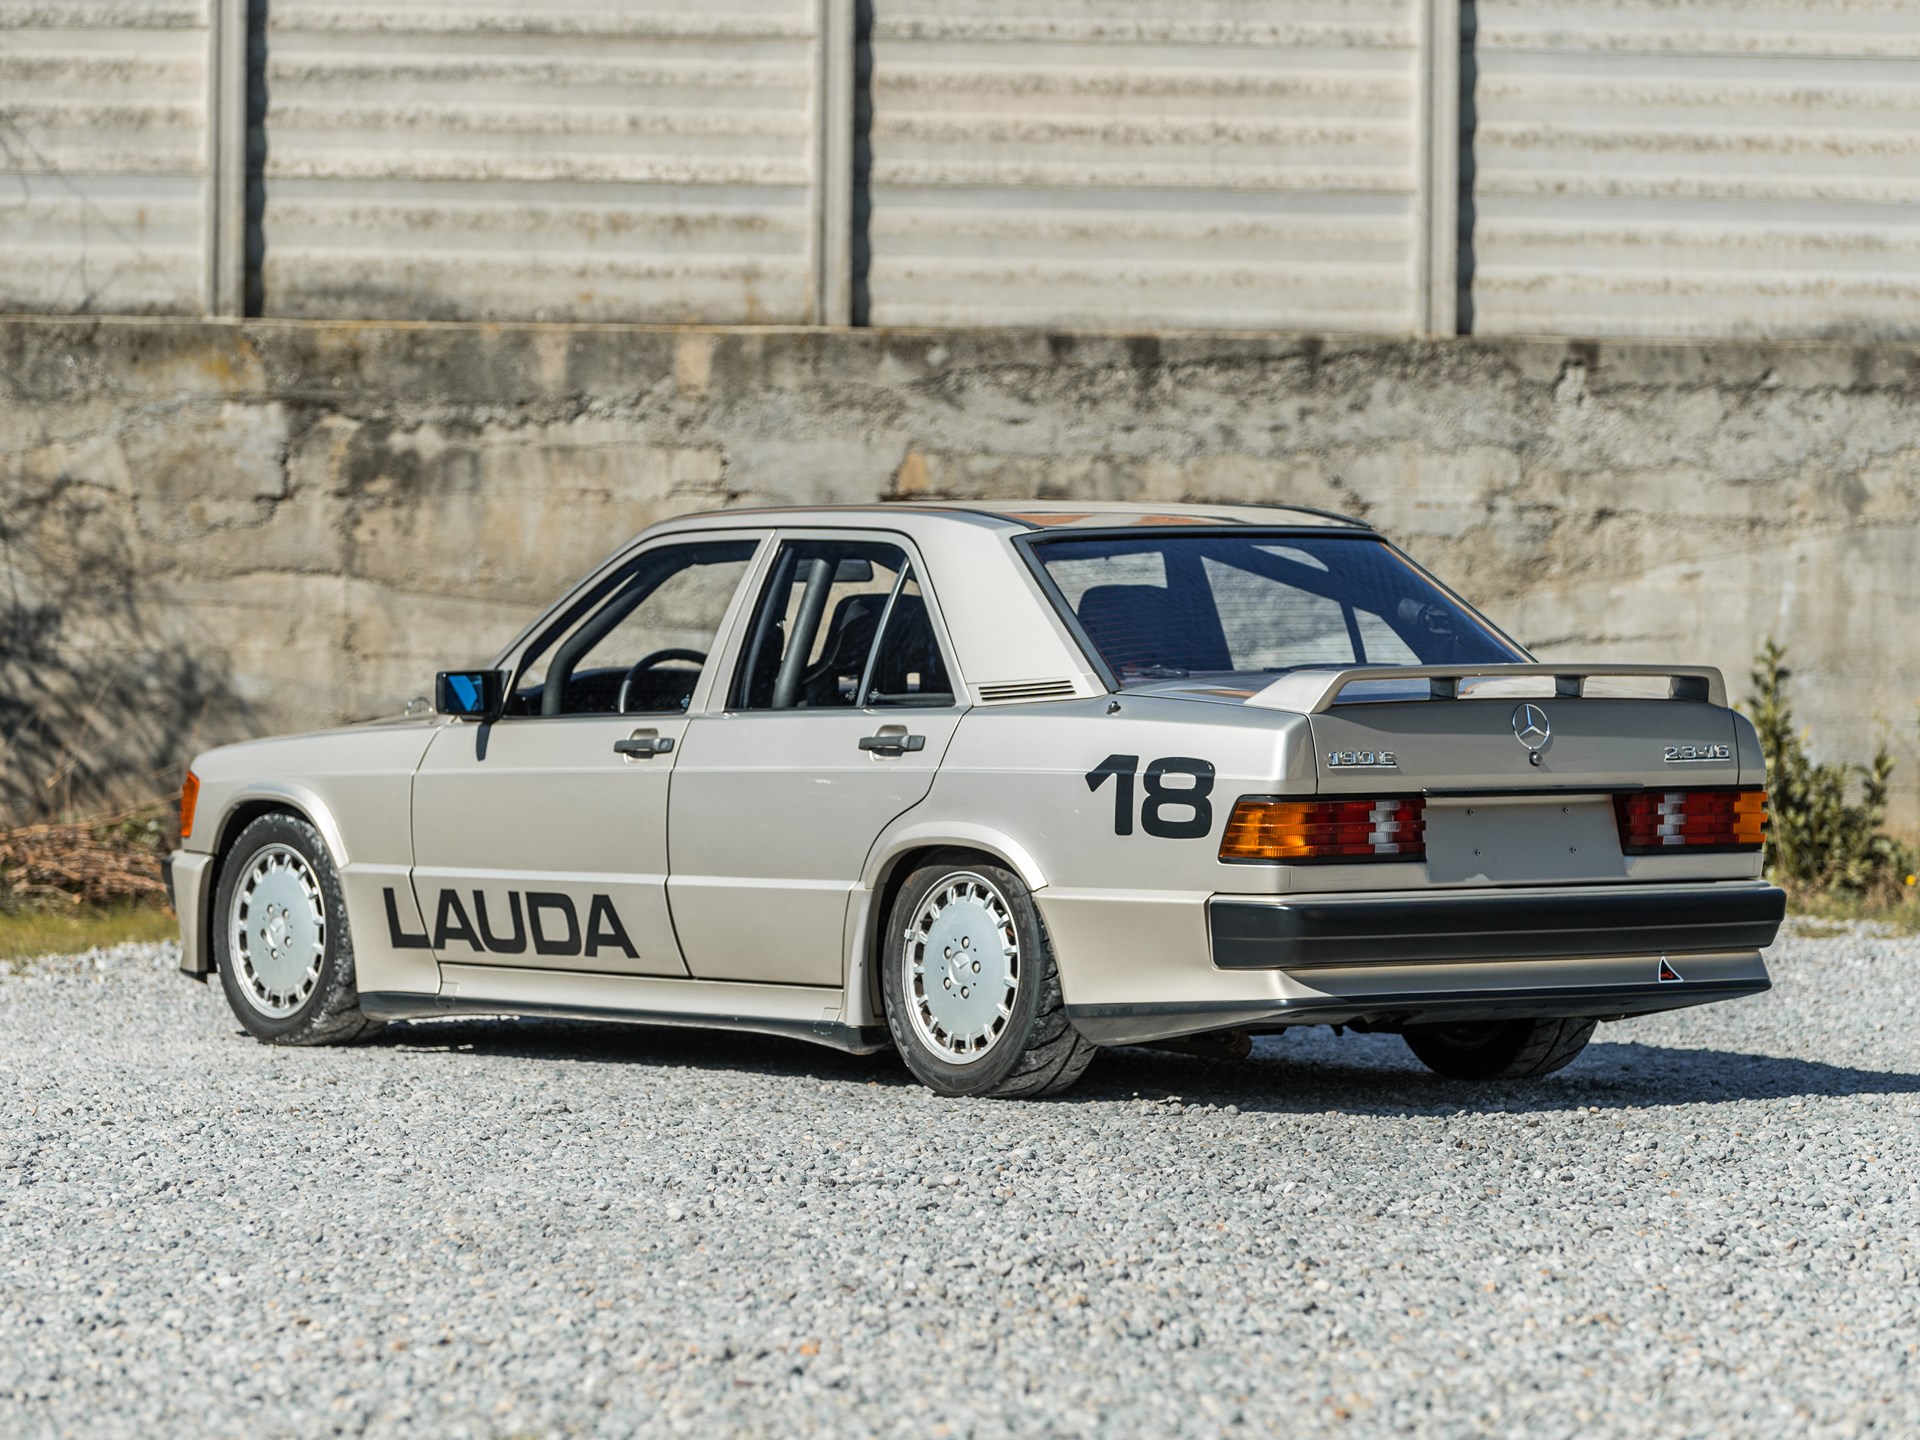 Niki Laudas Mercedes-Benz 190 E 2.3-16 'Nürburgring': Eine Rennsportlegende auf der Auktionsbühne